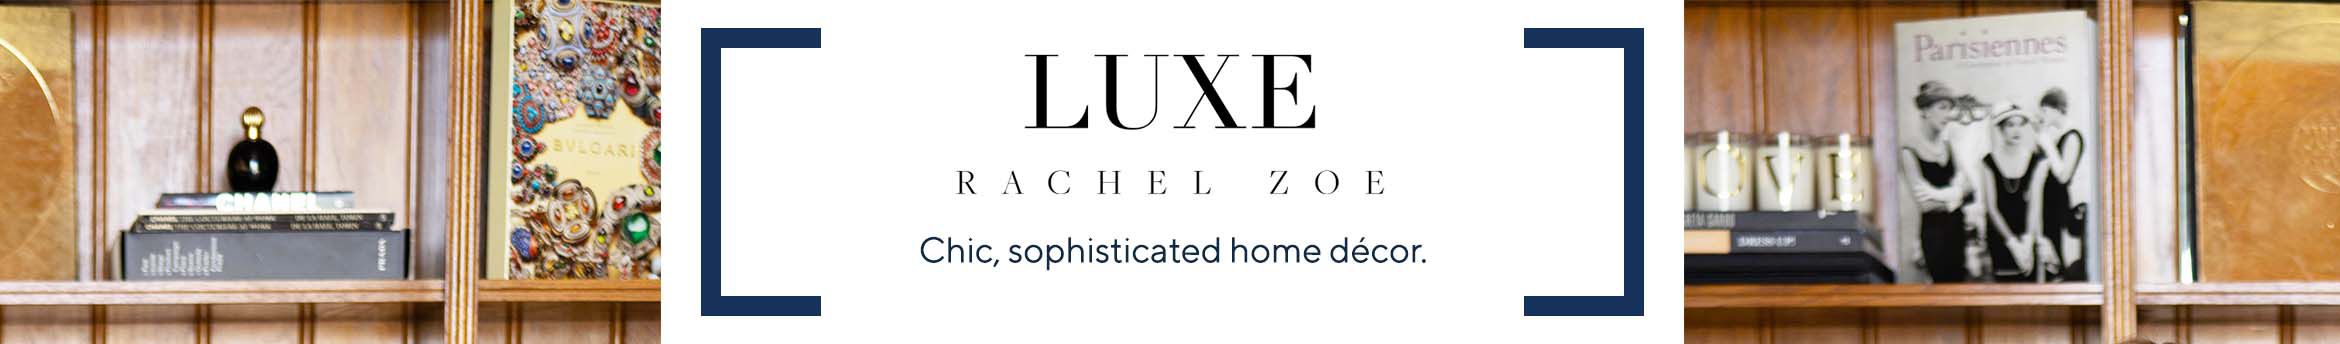 Luxe Rachel Zoe | Home Décor, Decorative Pillows & More - QVC.com